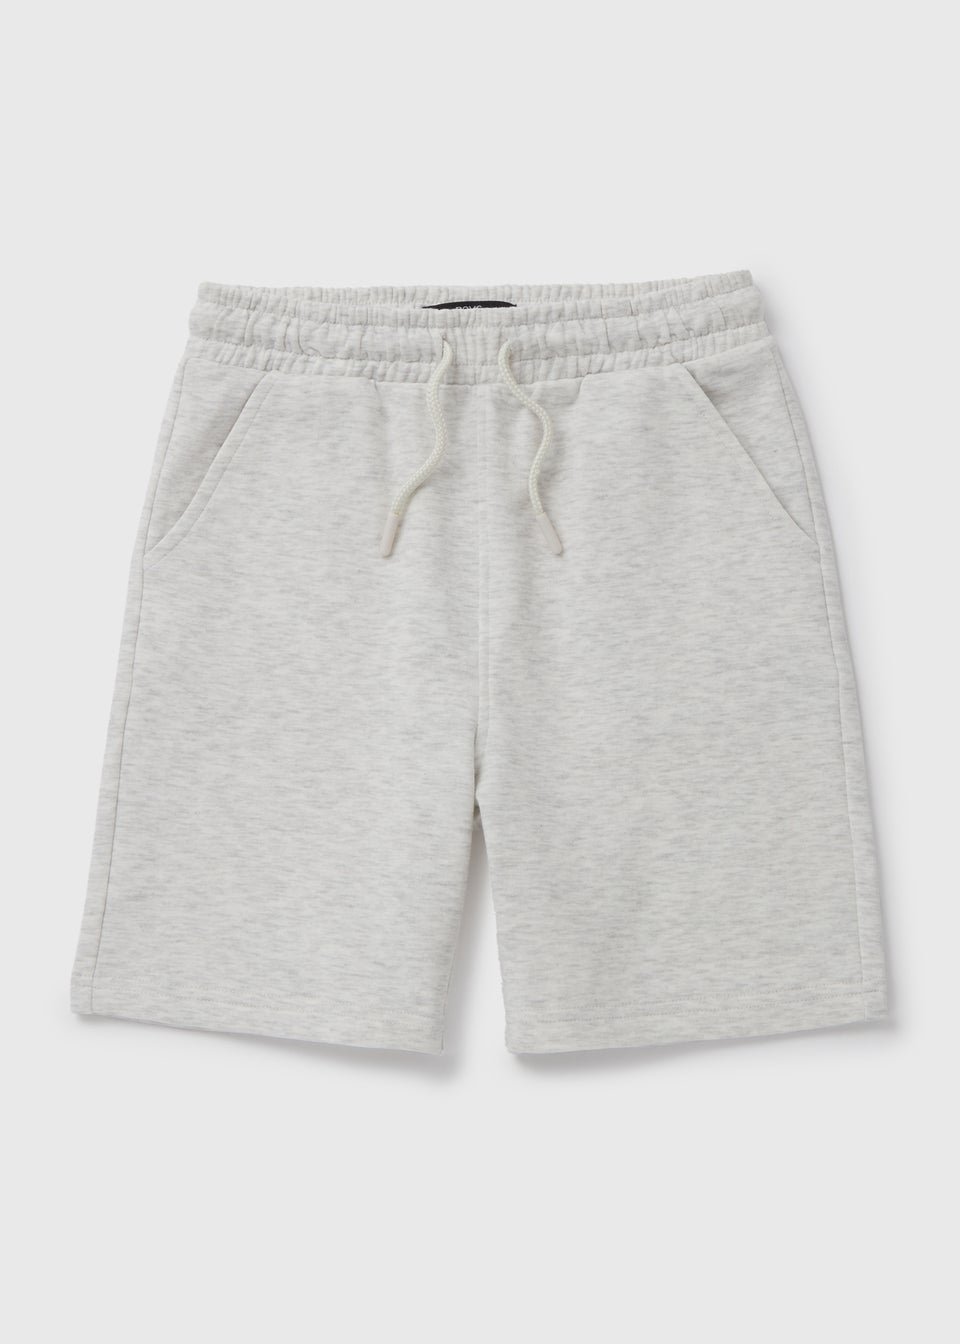 Boys Grey Shorts (7-13yrs)